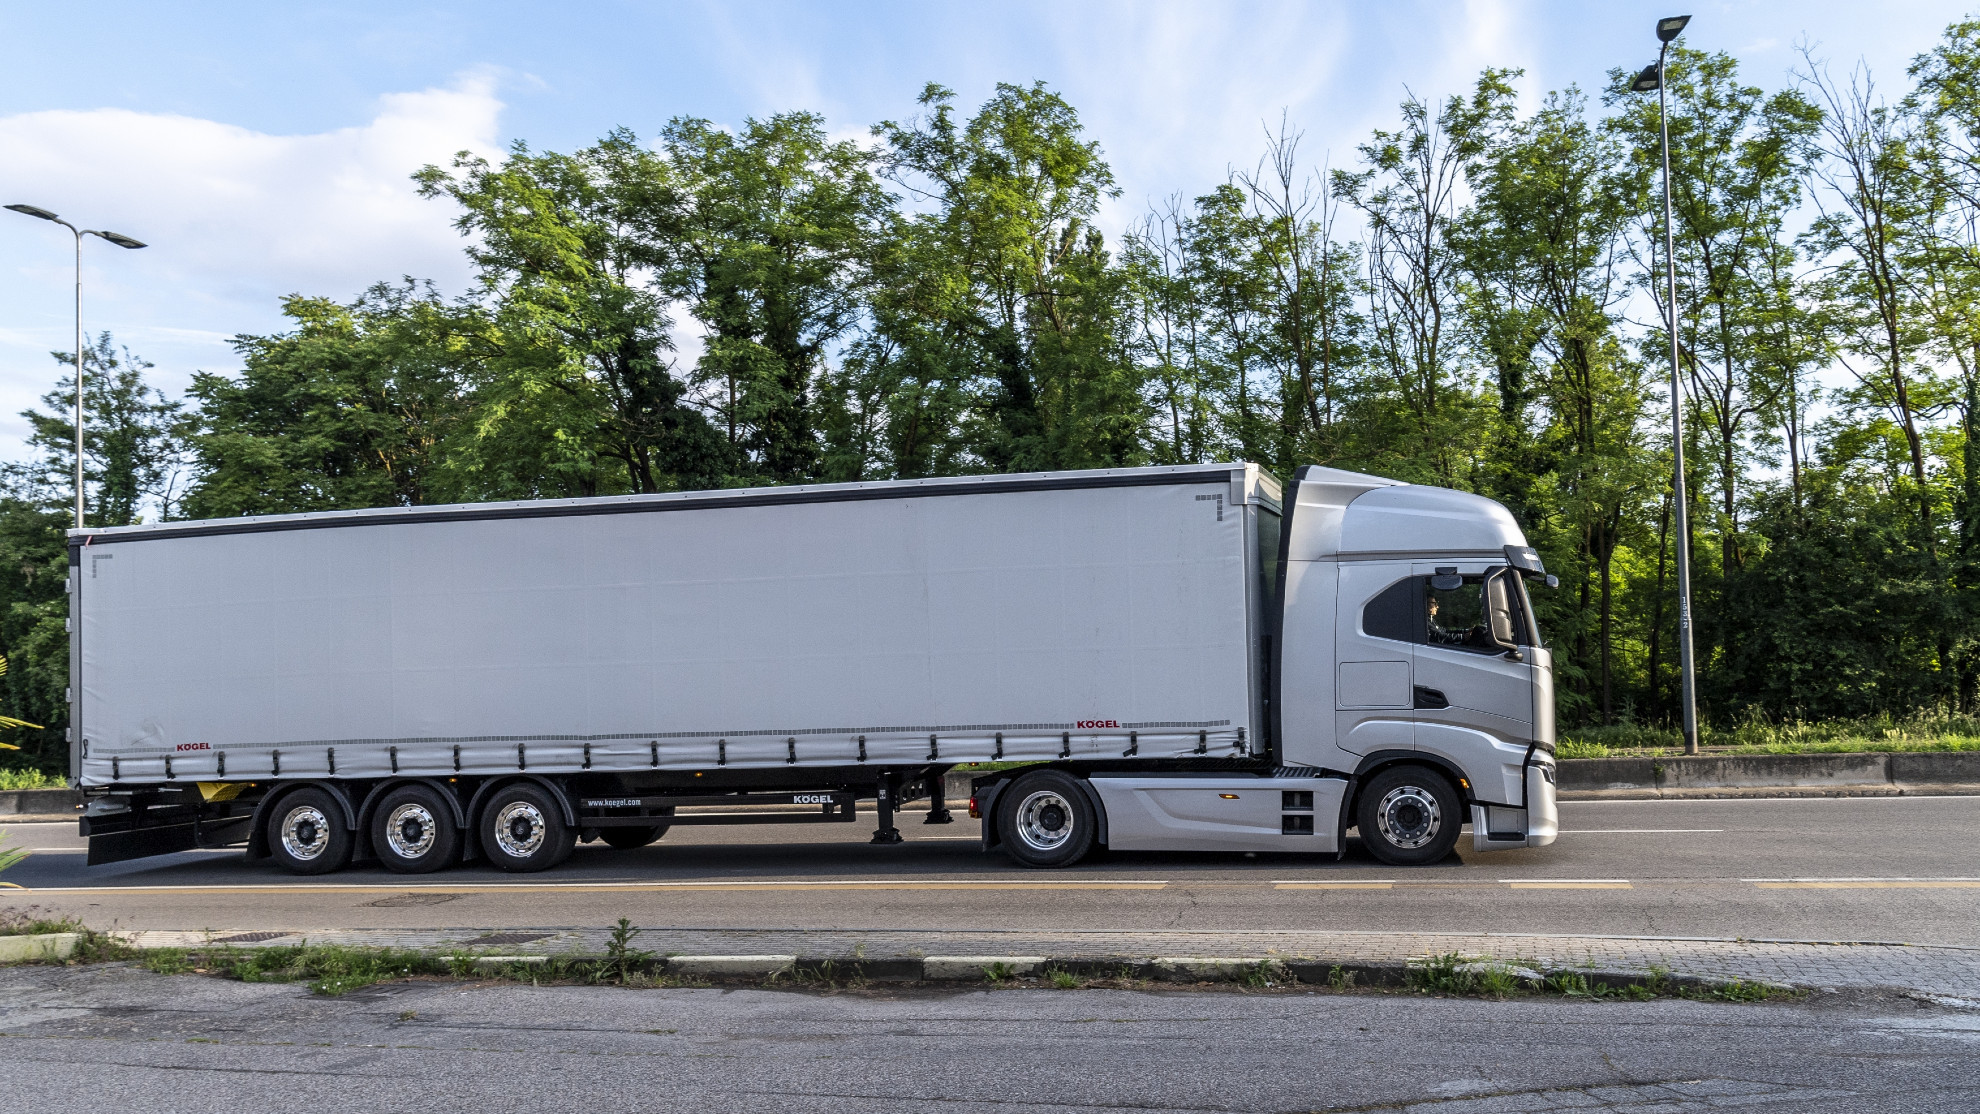 Camioneros - Transportistas - Huelga - Paro nacional - Acuerdo - Decreto ley